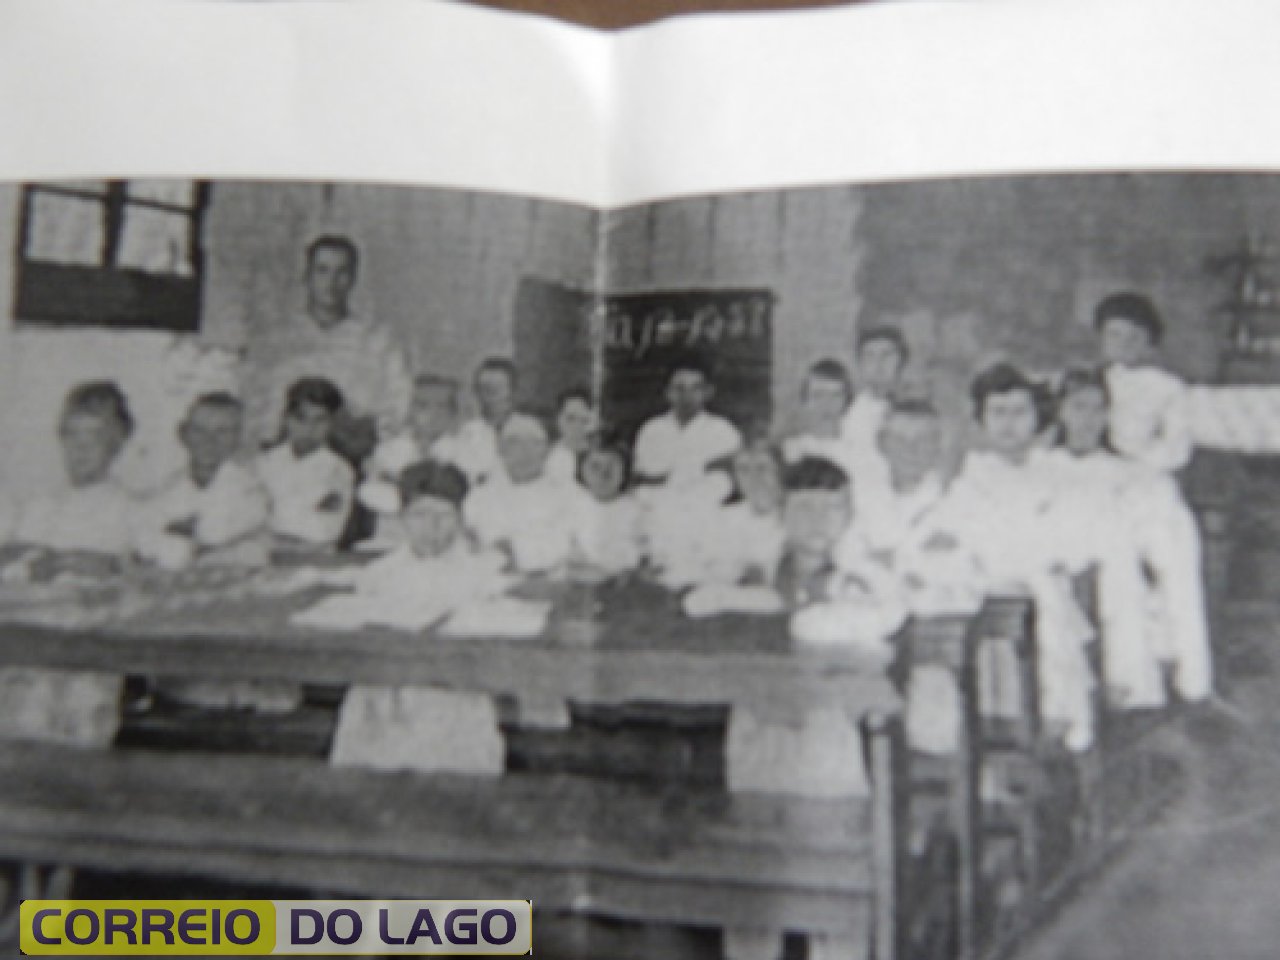 Primeira turma de aluno de SH (1958). Estudavam na Igreja Católica da foto anterior. Primeiro professor Luis de Bona Neto. Contratado pela Empresa de Colonização Agrícola Madalozzo. É a pessoa que aparece a esquerda da foto em pé.